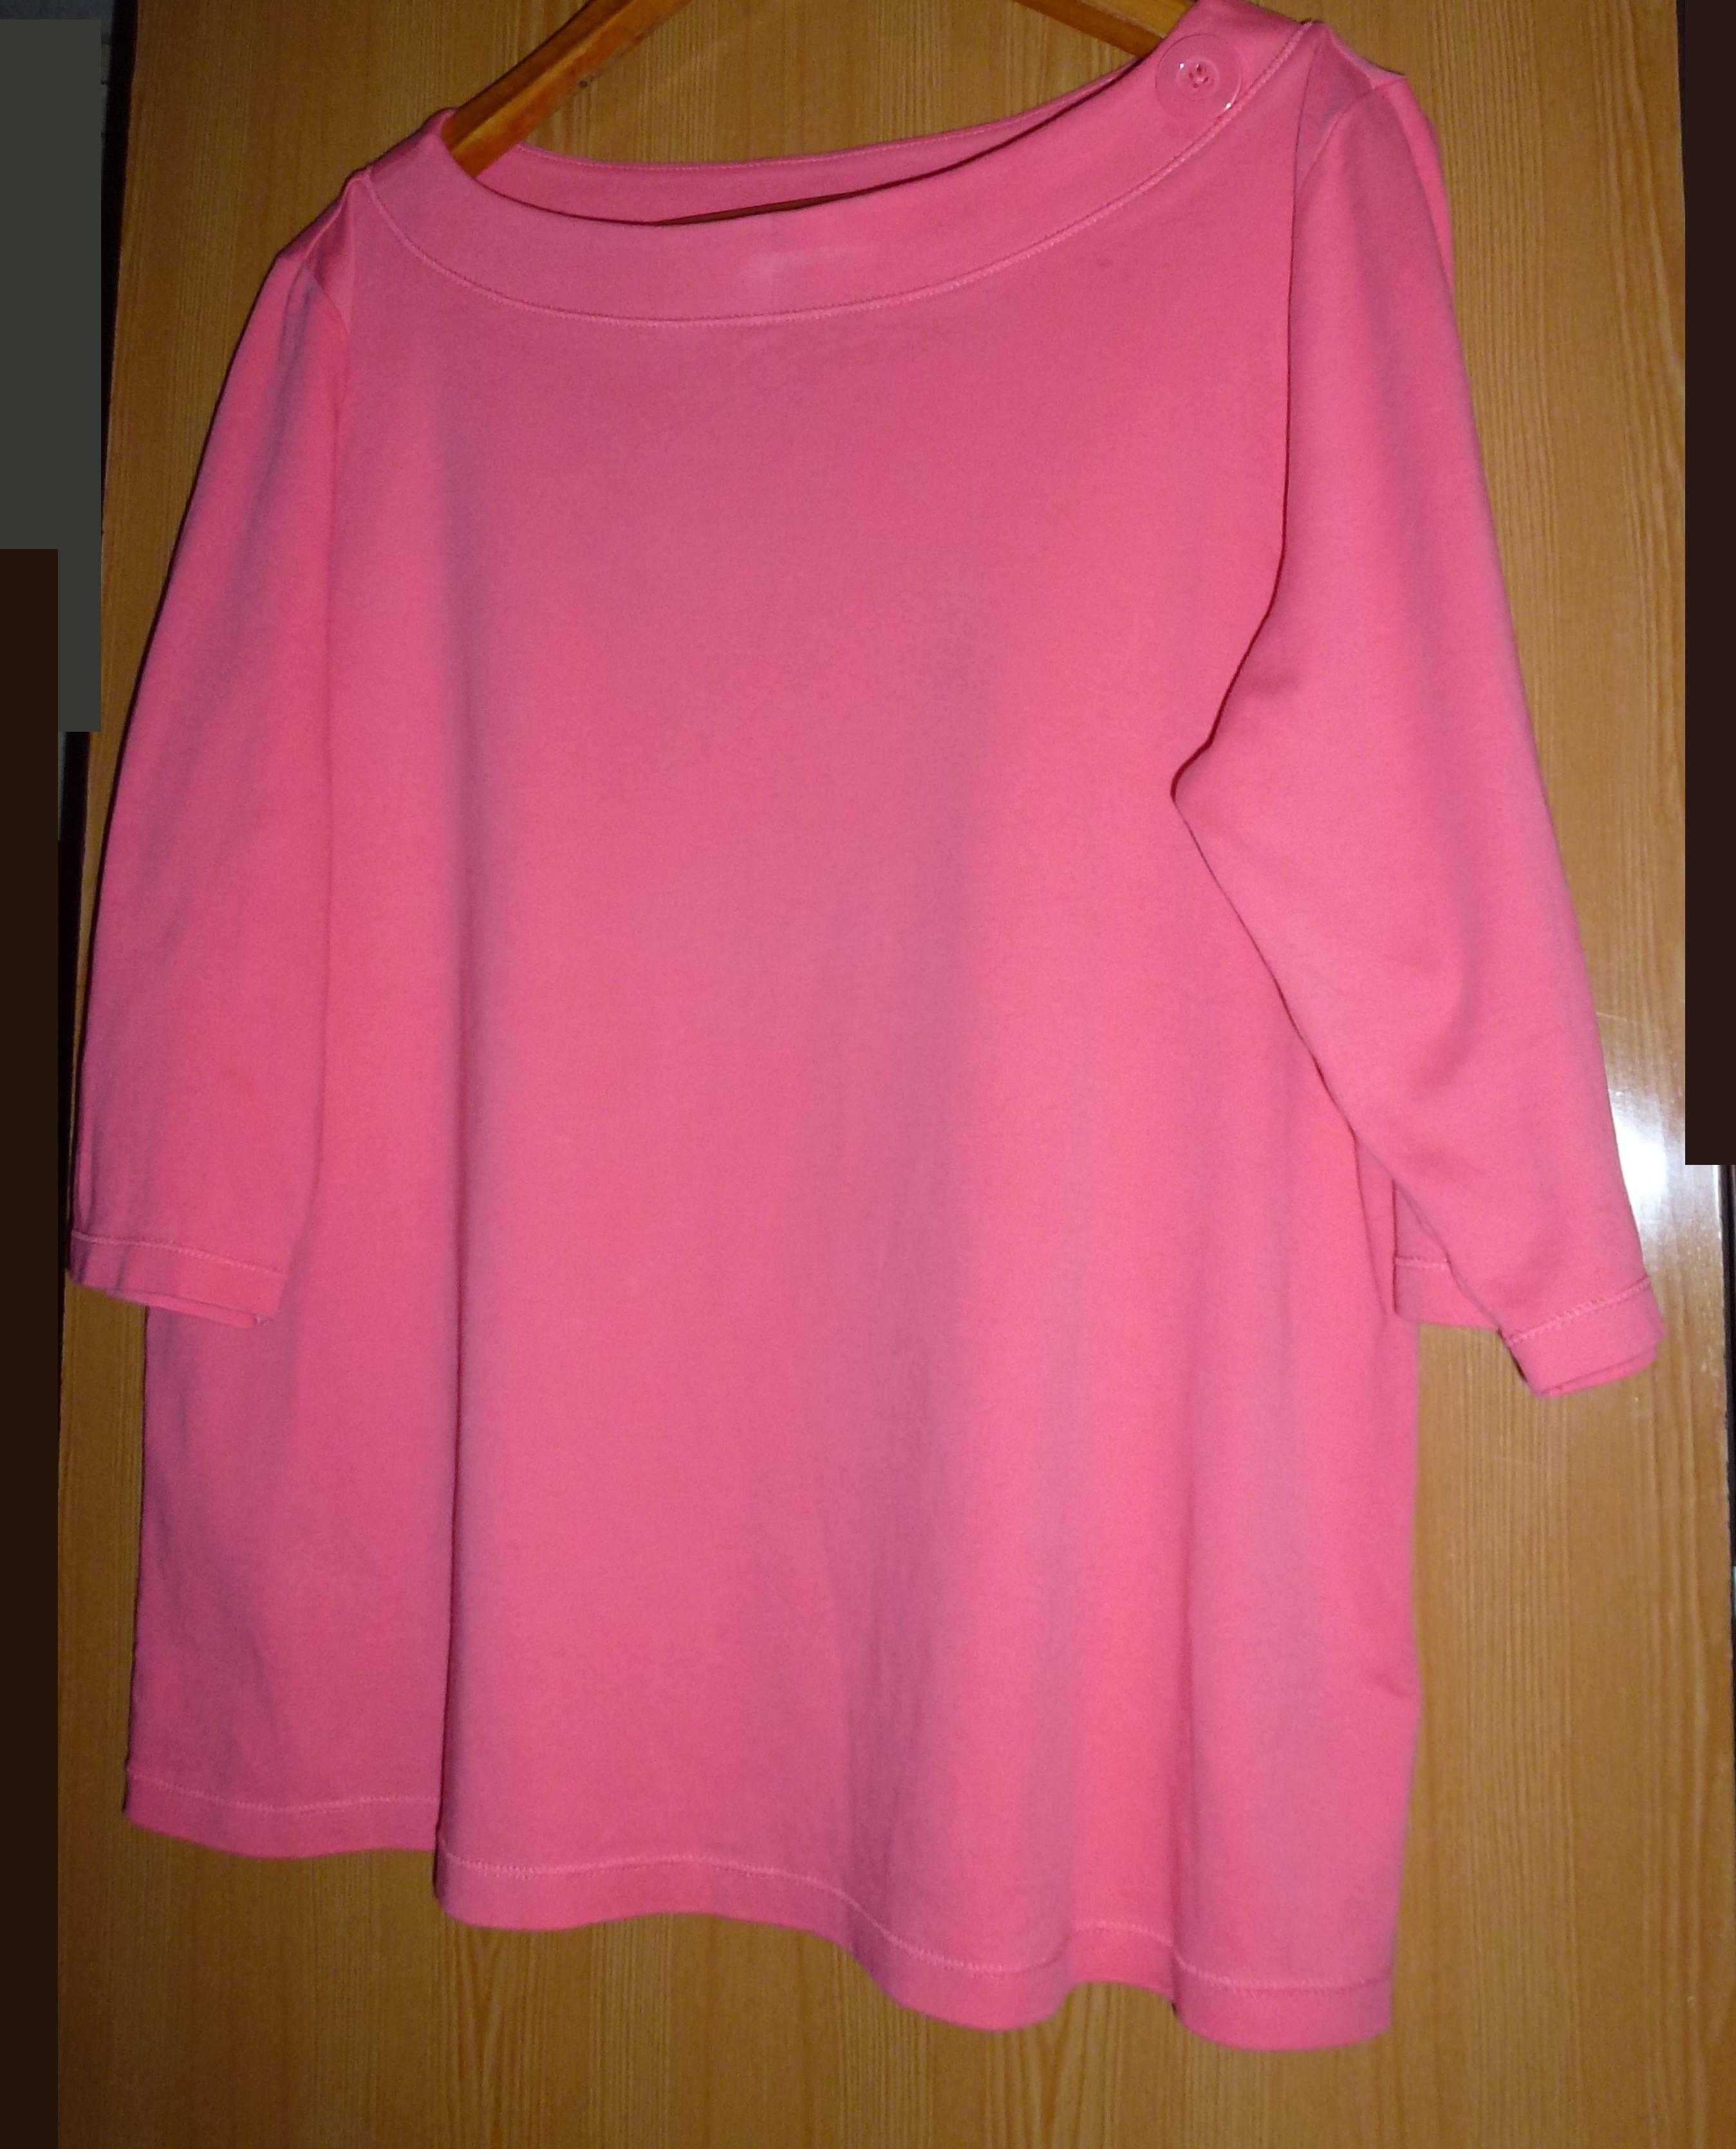 Трикотажная блуза от бренда Marco Pecci. Большой размер